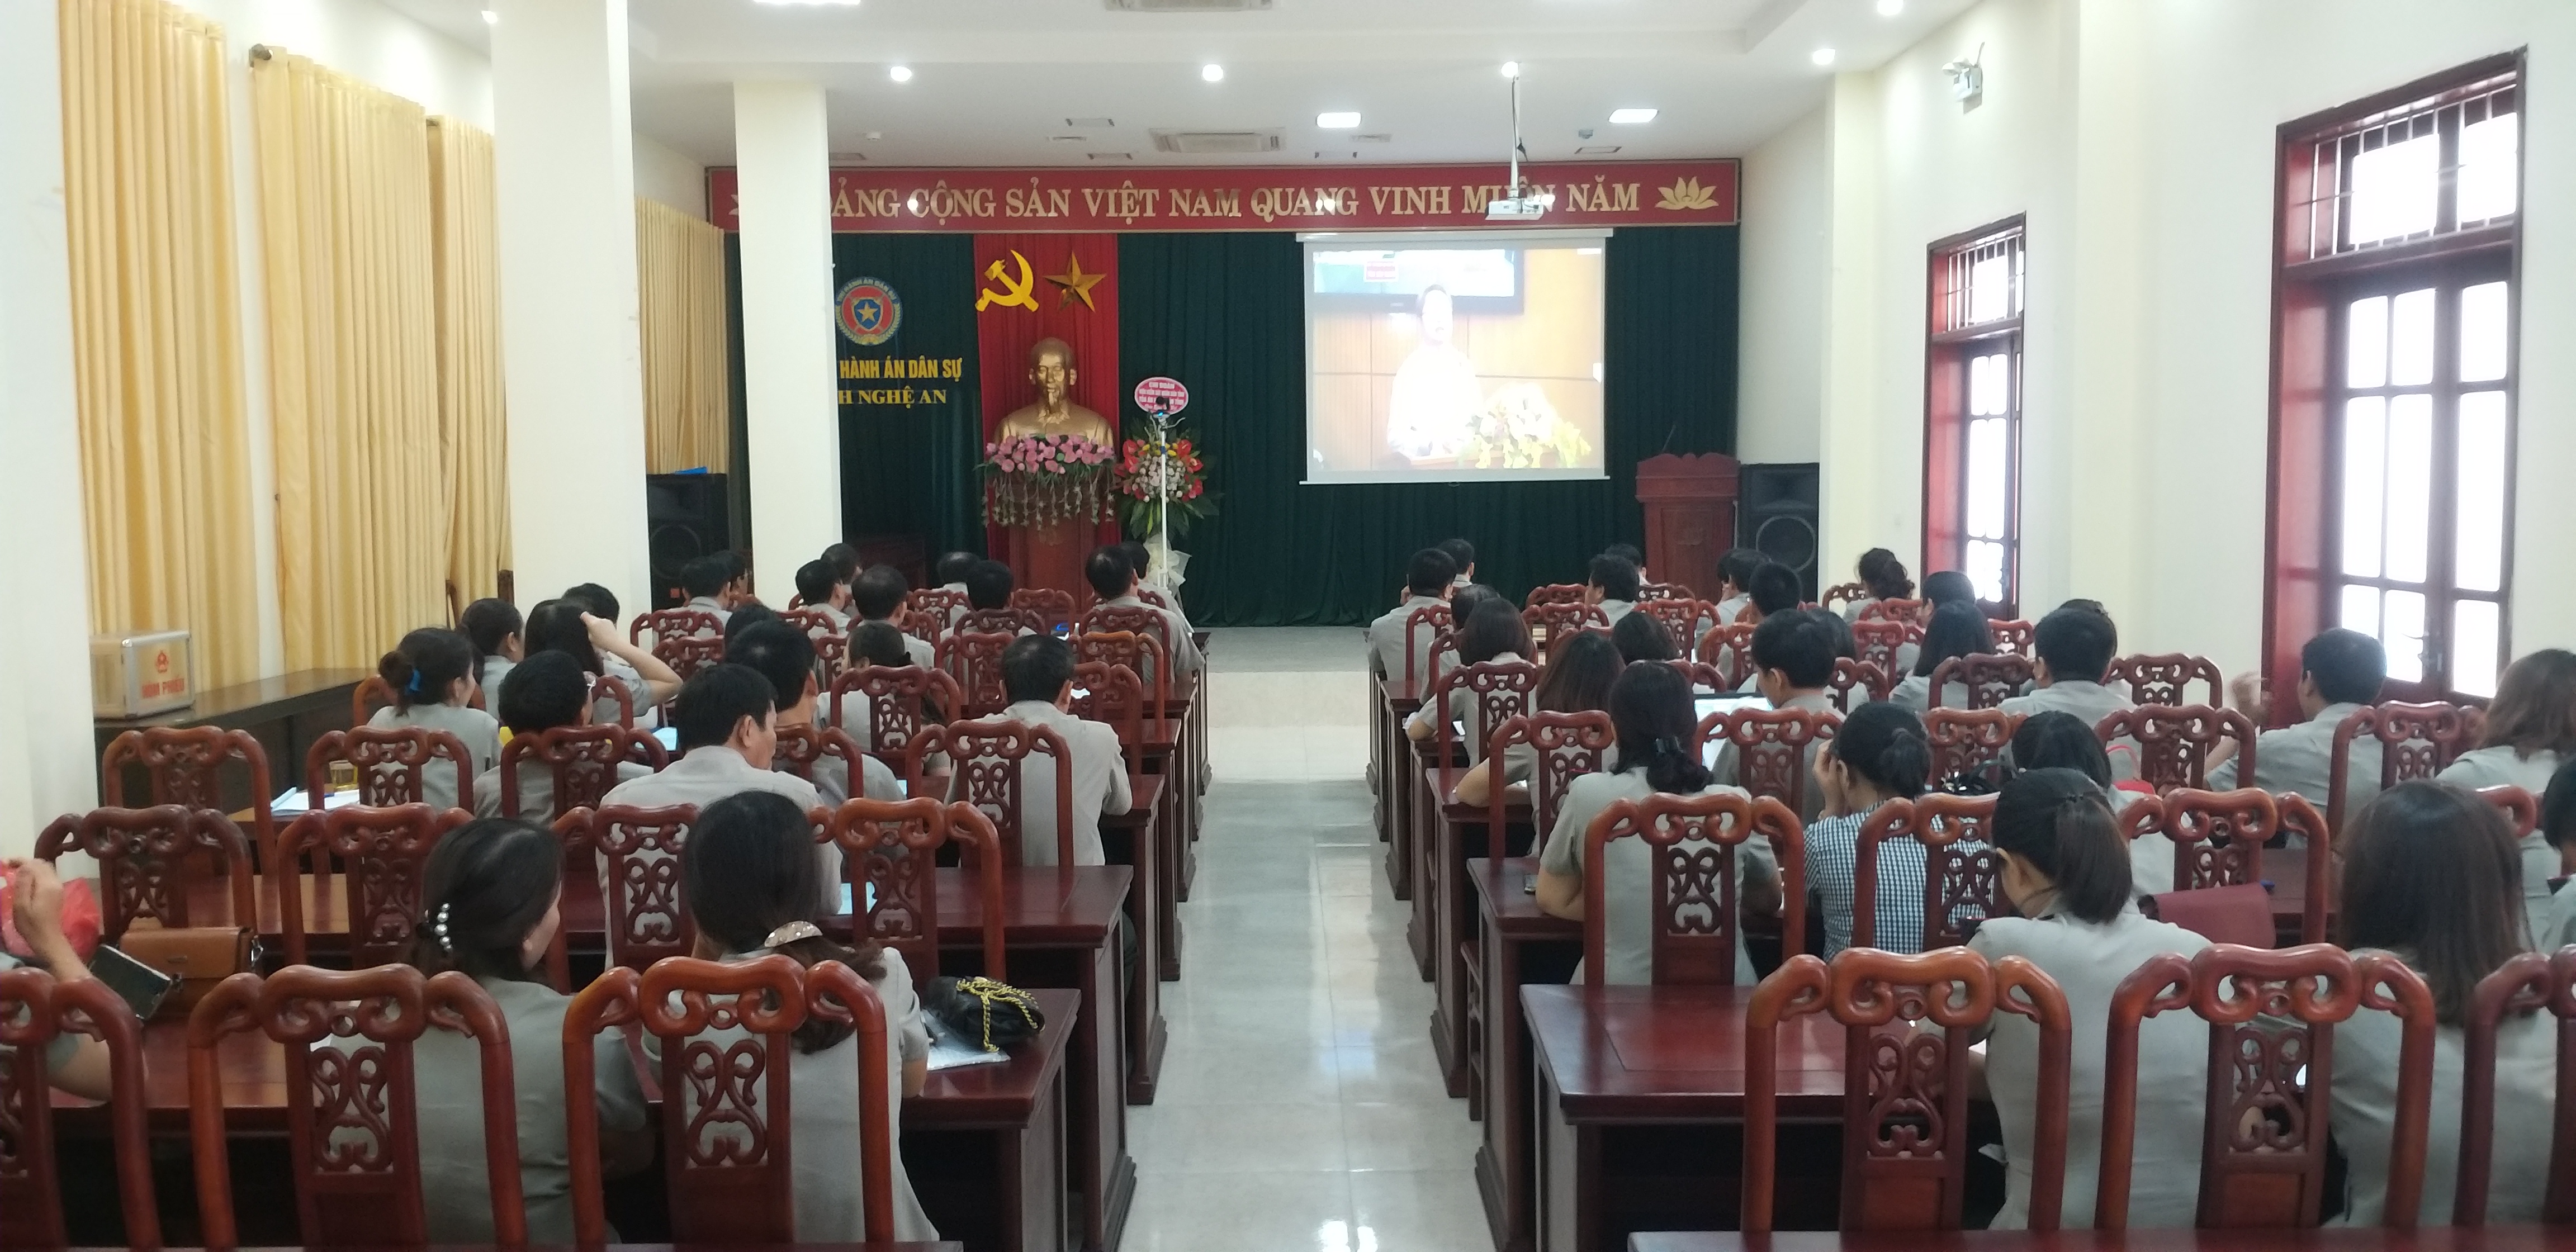 Cục THADS tỉnh Nghệ An tham gia Hội nghị trực tuyến sơ kết 05 năm thực hiện Chỉ thị 01/CT-BTP của Bộ trưởng Bộ Tư pháp về tăng cường phòng, chống tiêu cực, tham nhũng trong THADS